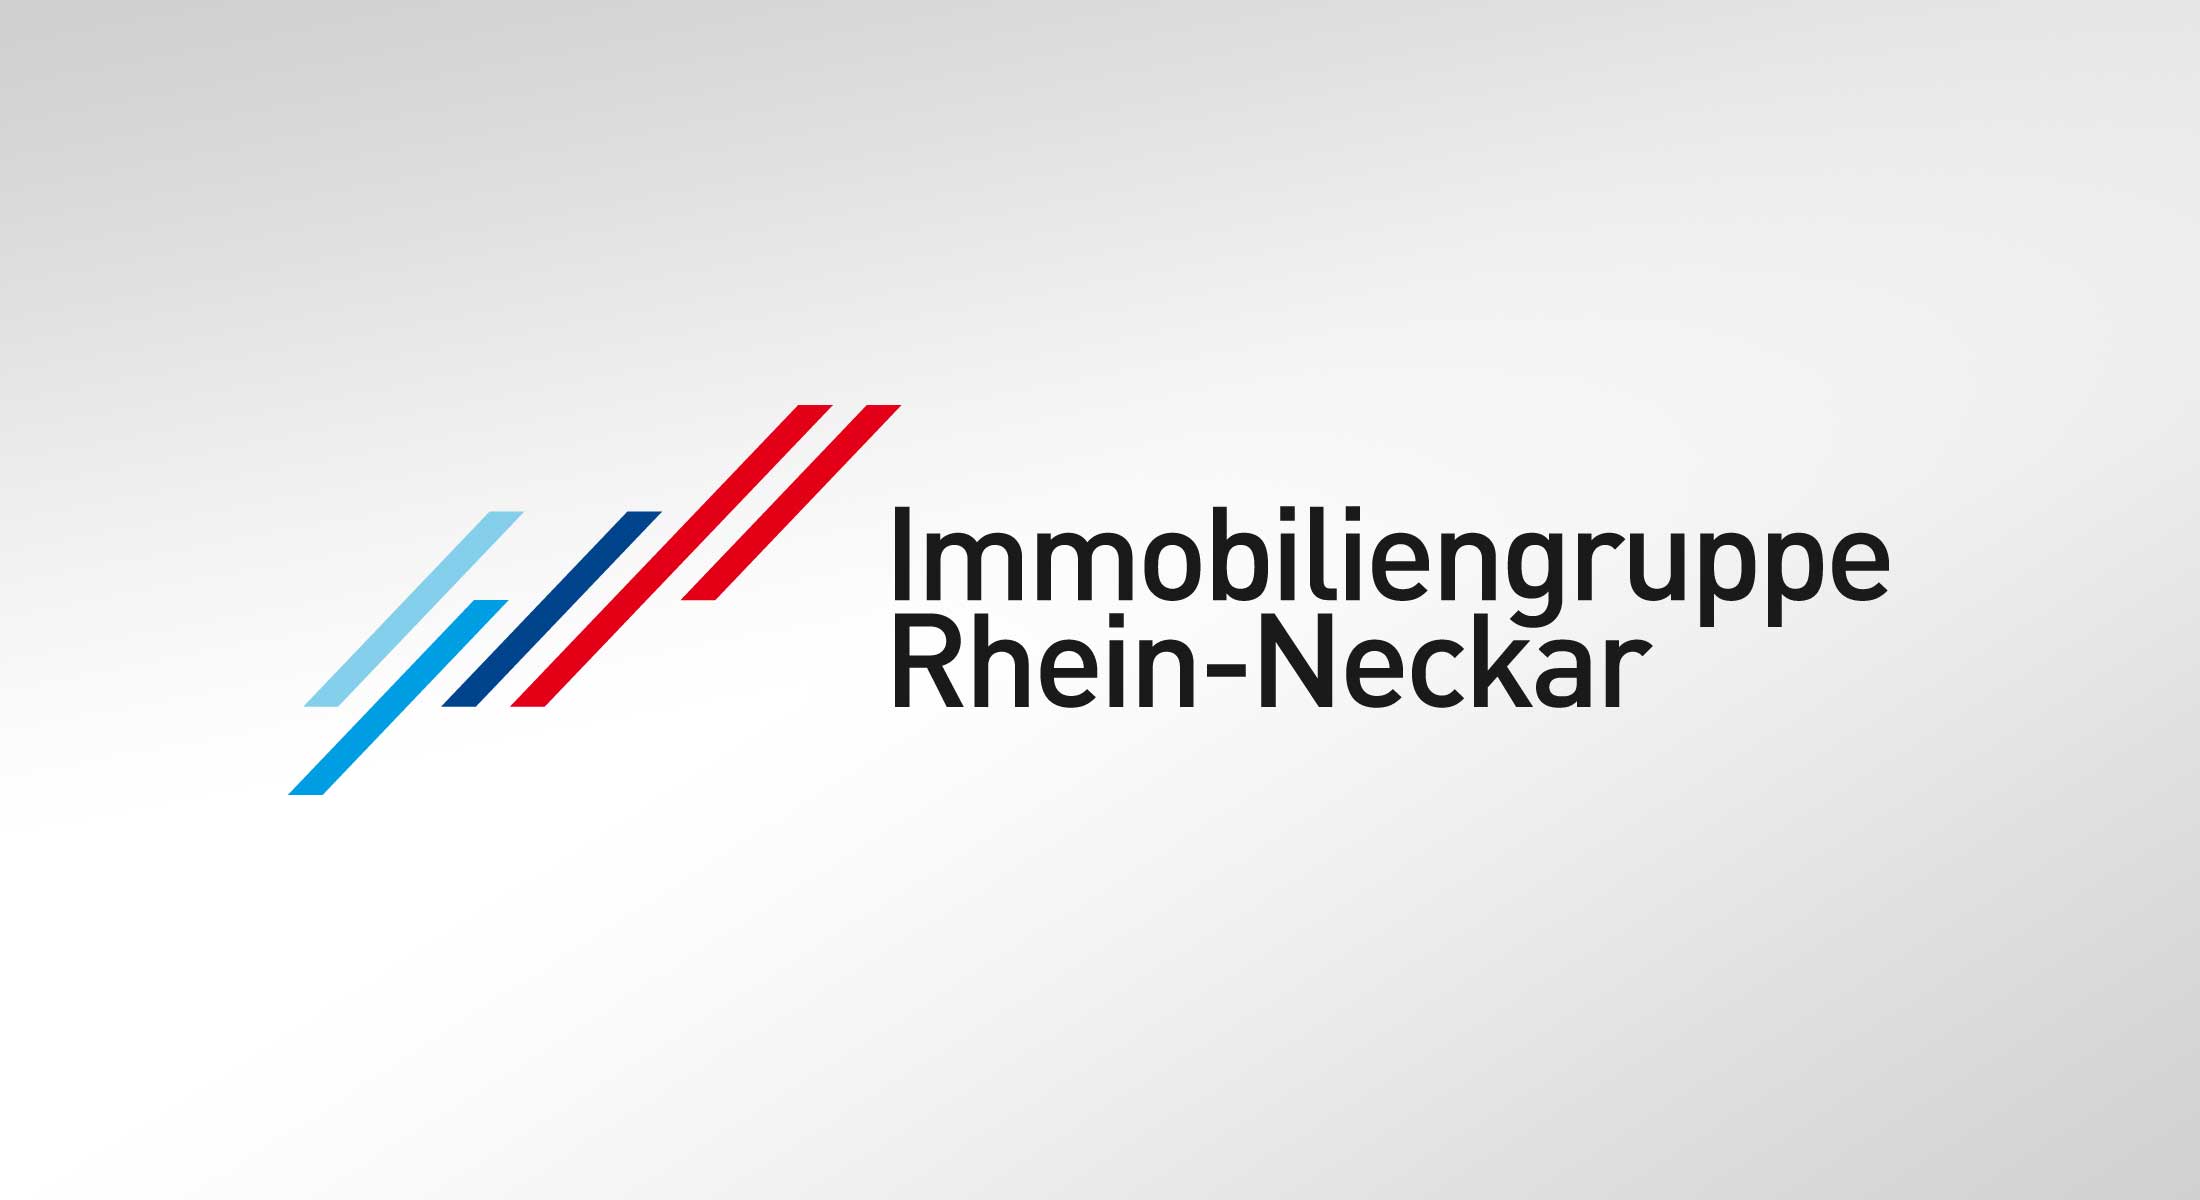 immobilienwerbung-zb2-logo-immobiliengruppe-rhein-neckar